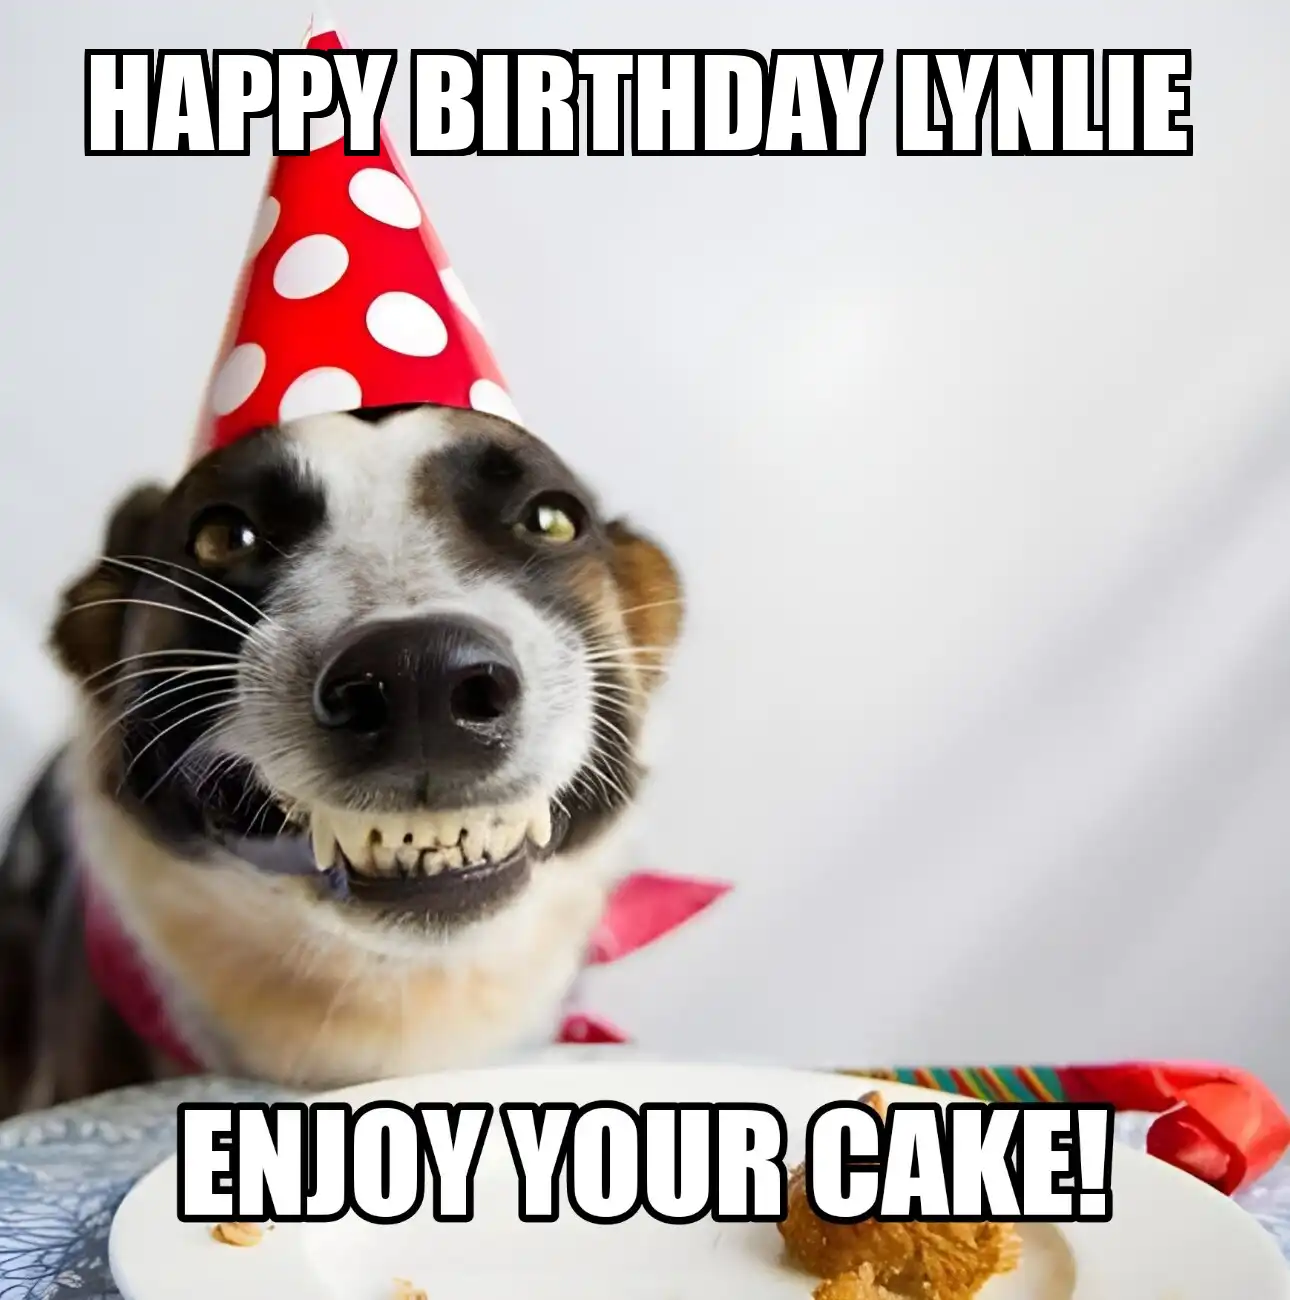 Happy Birthday Lynlie Enjoy Your Cake Dog Meme